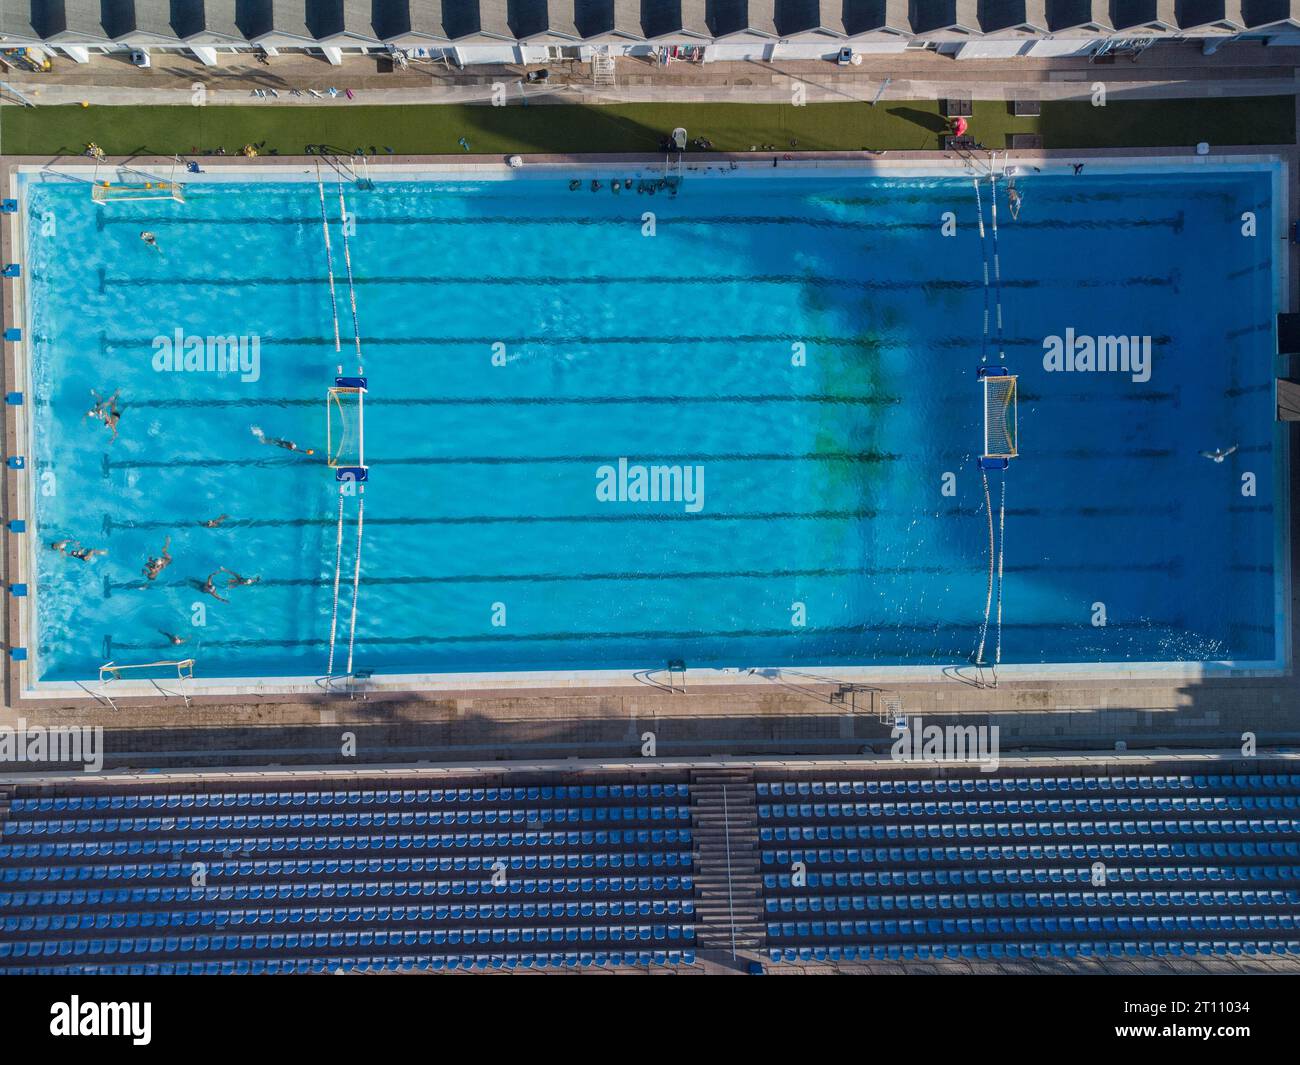 Foto aerea con droni di persone che gareggiano in pallanuoto nella piscina d'acqua turchese Foto Stock